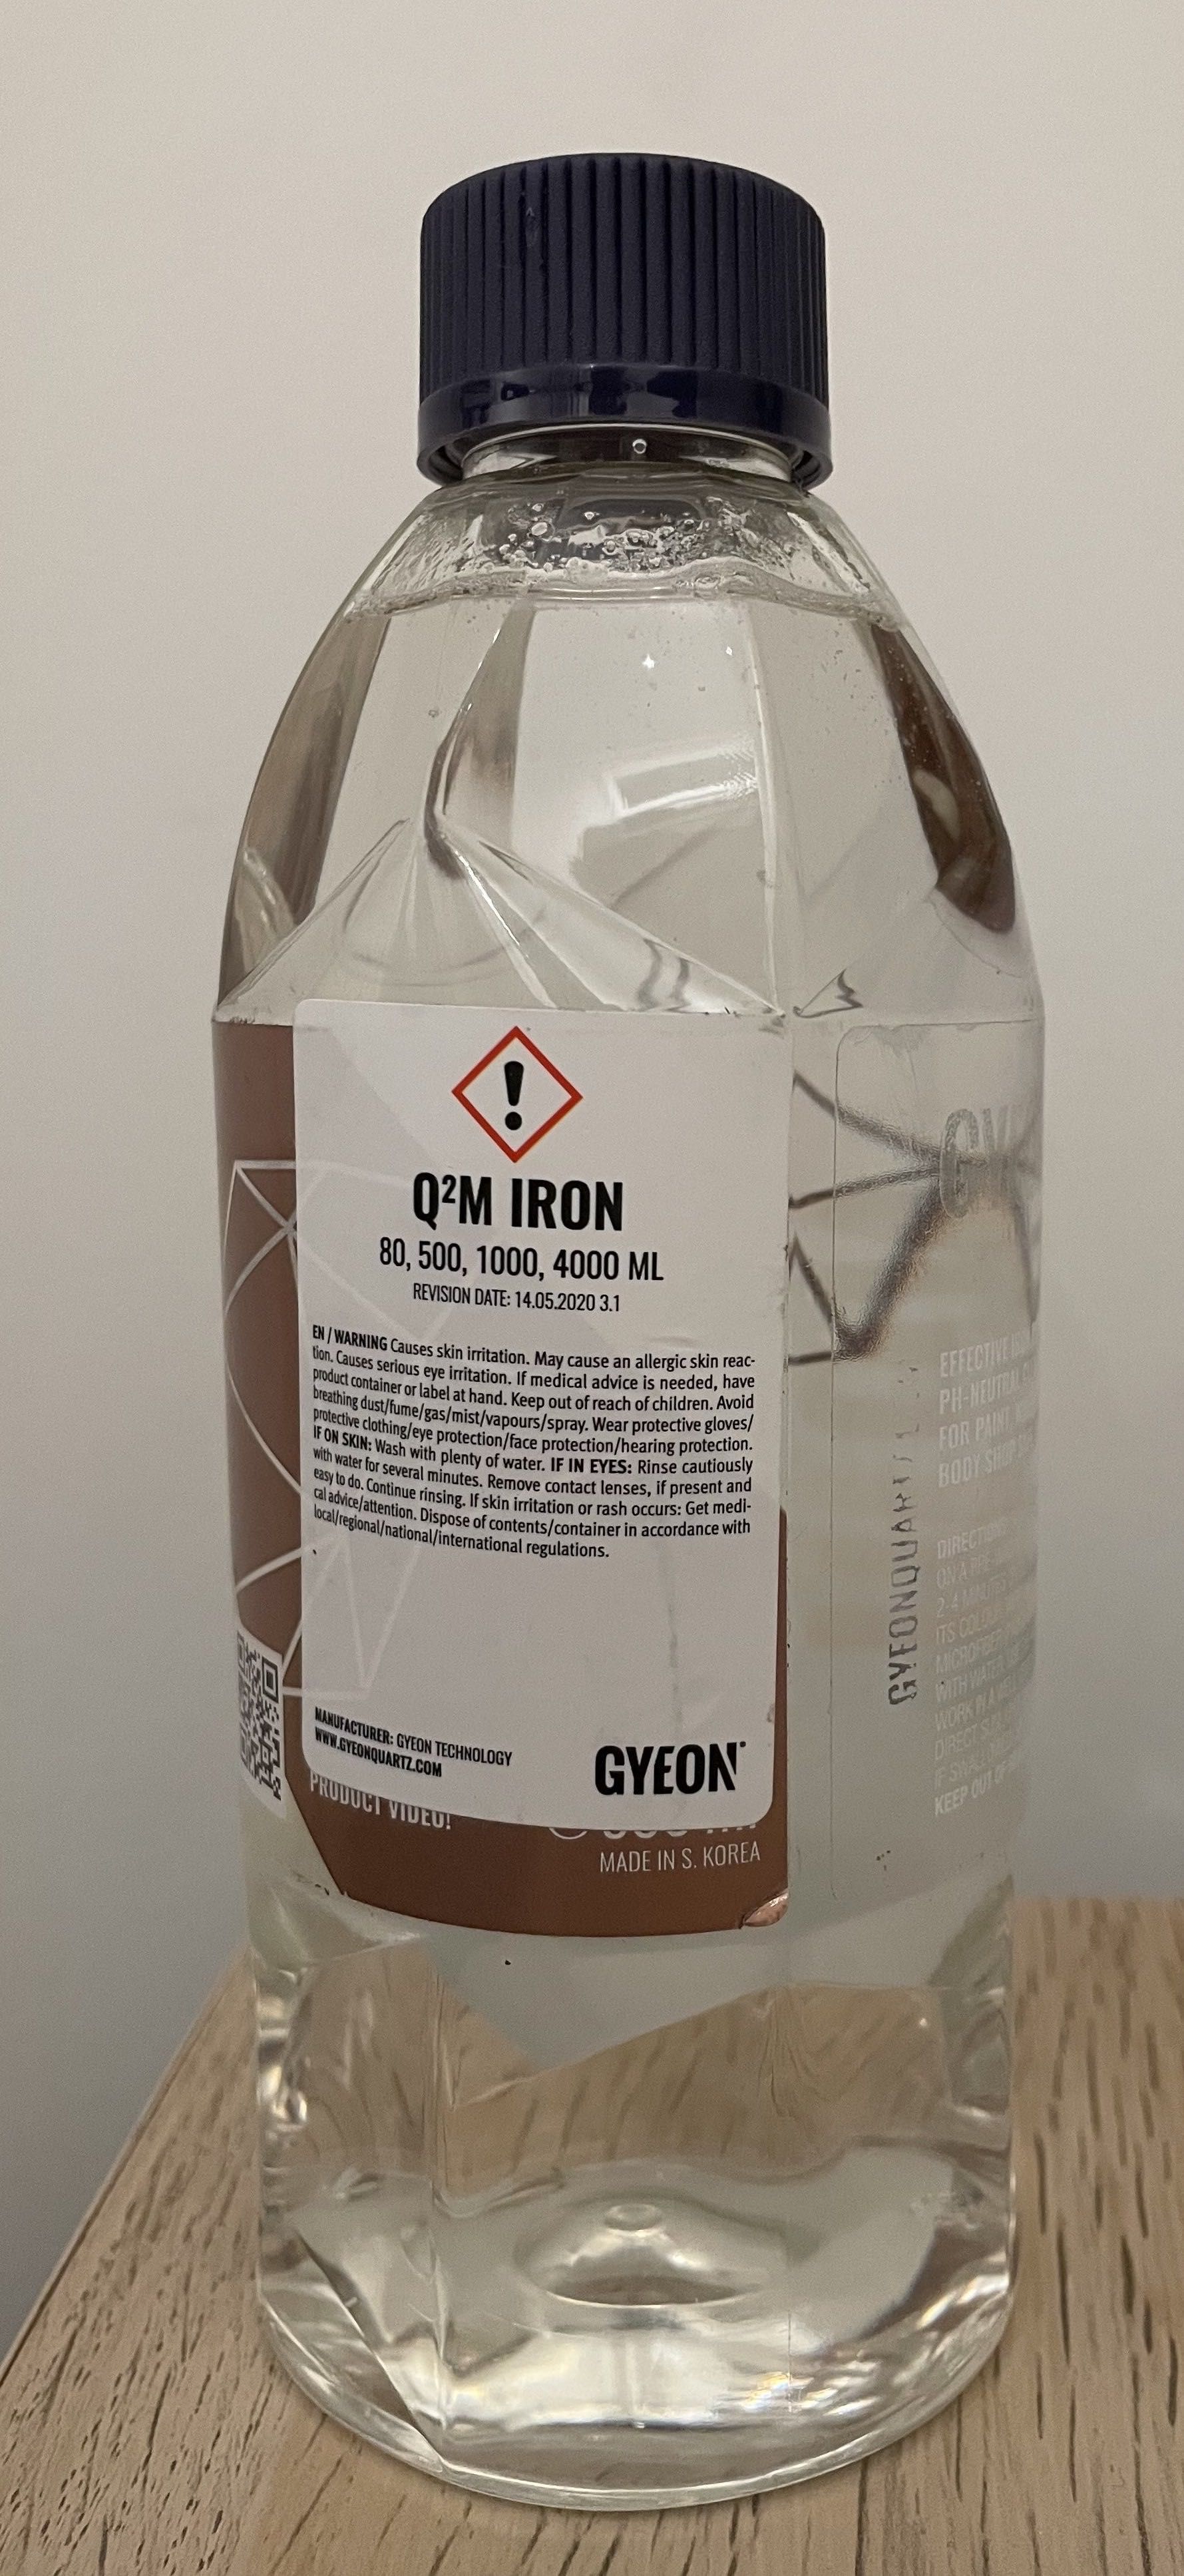 Gyeon Q2M Iron Remover - Descontaminante férreo para automóvel